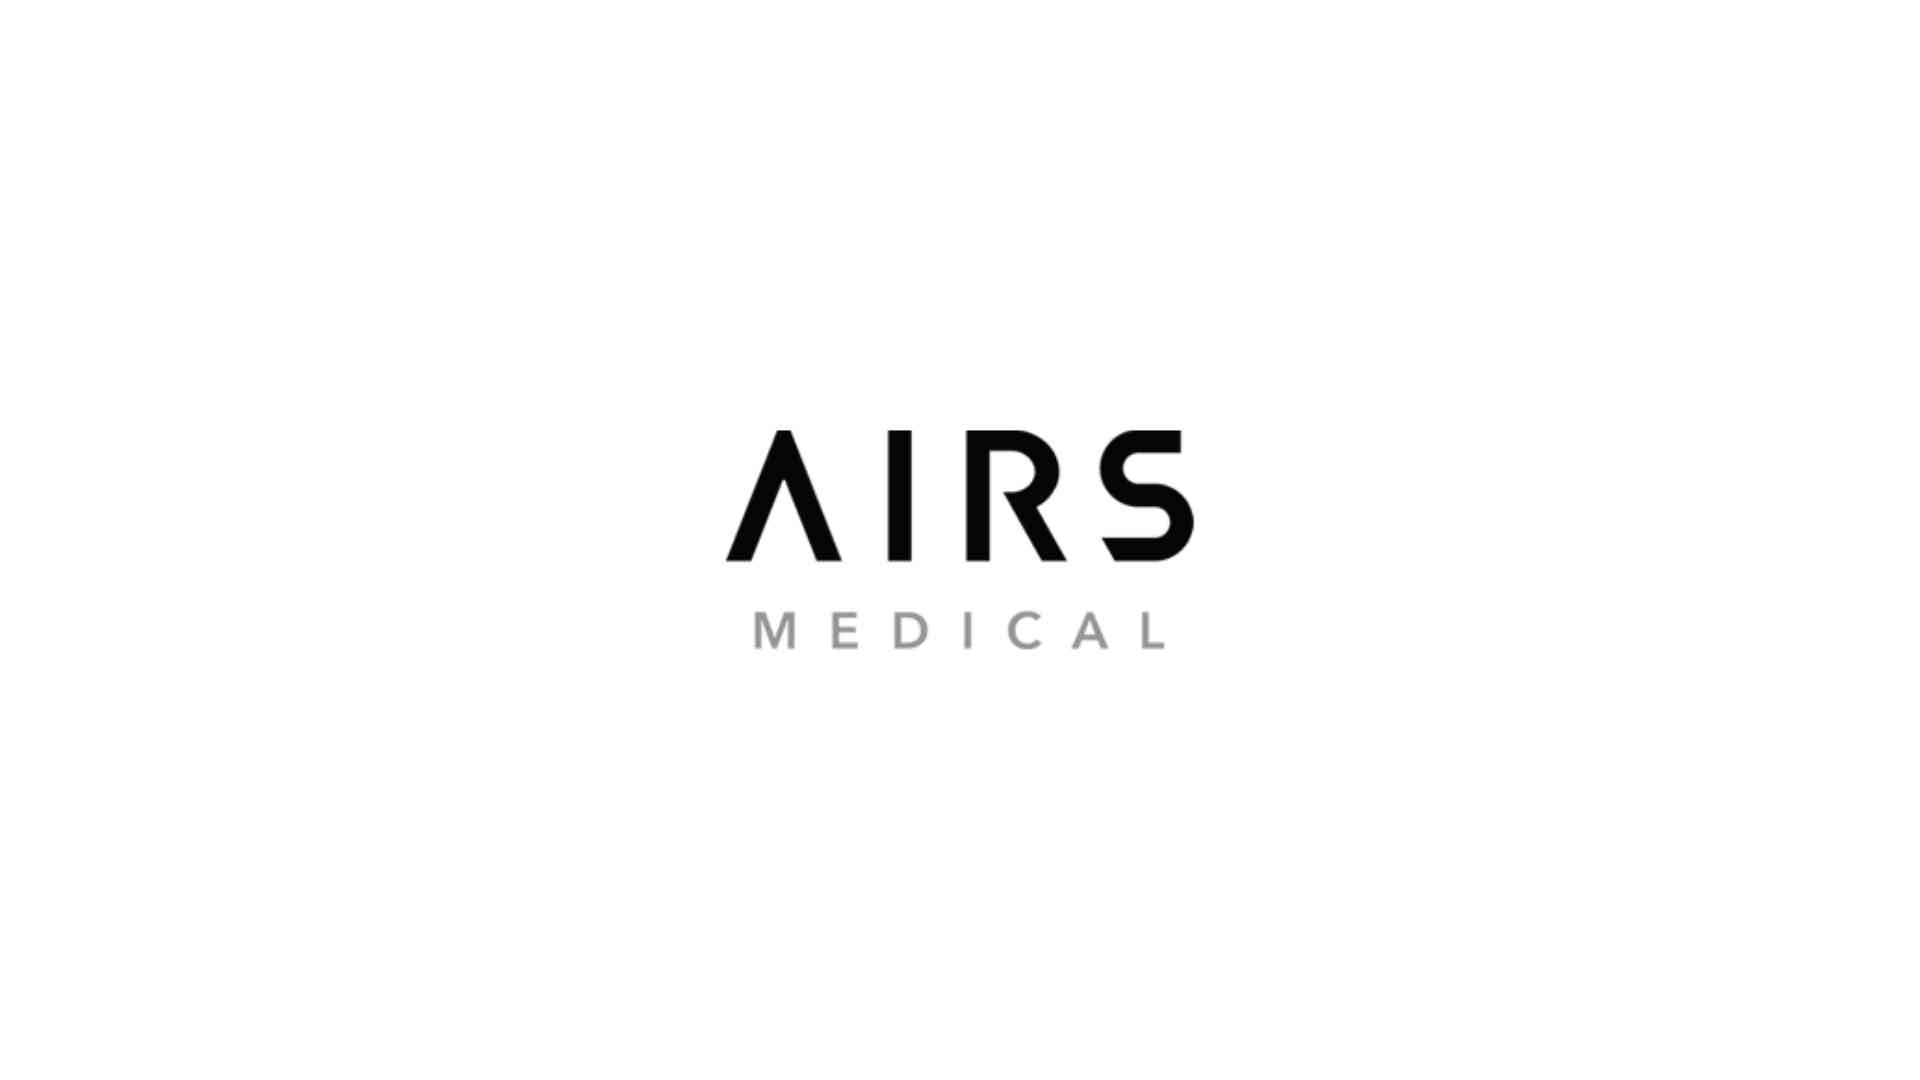 AIRS Medical